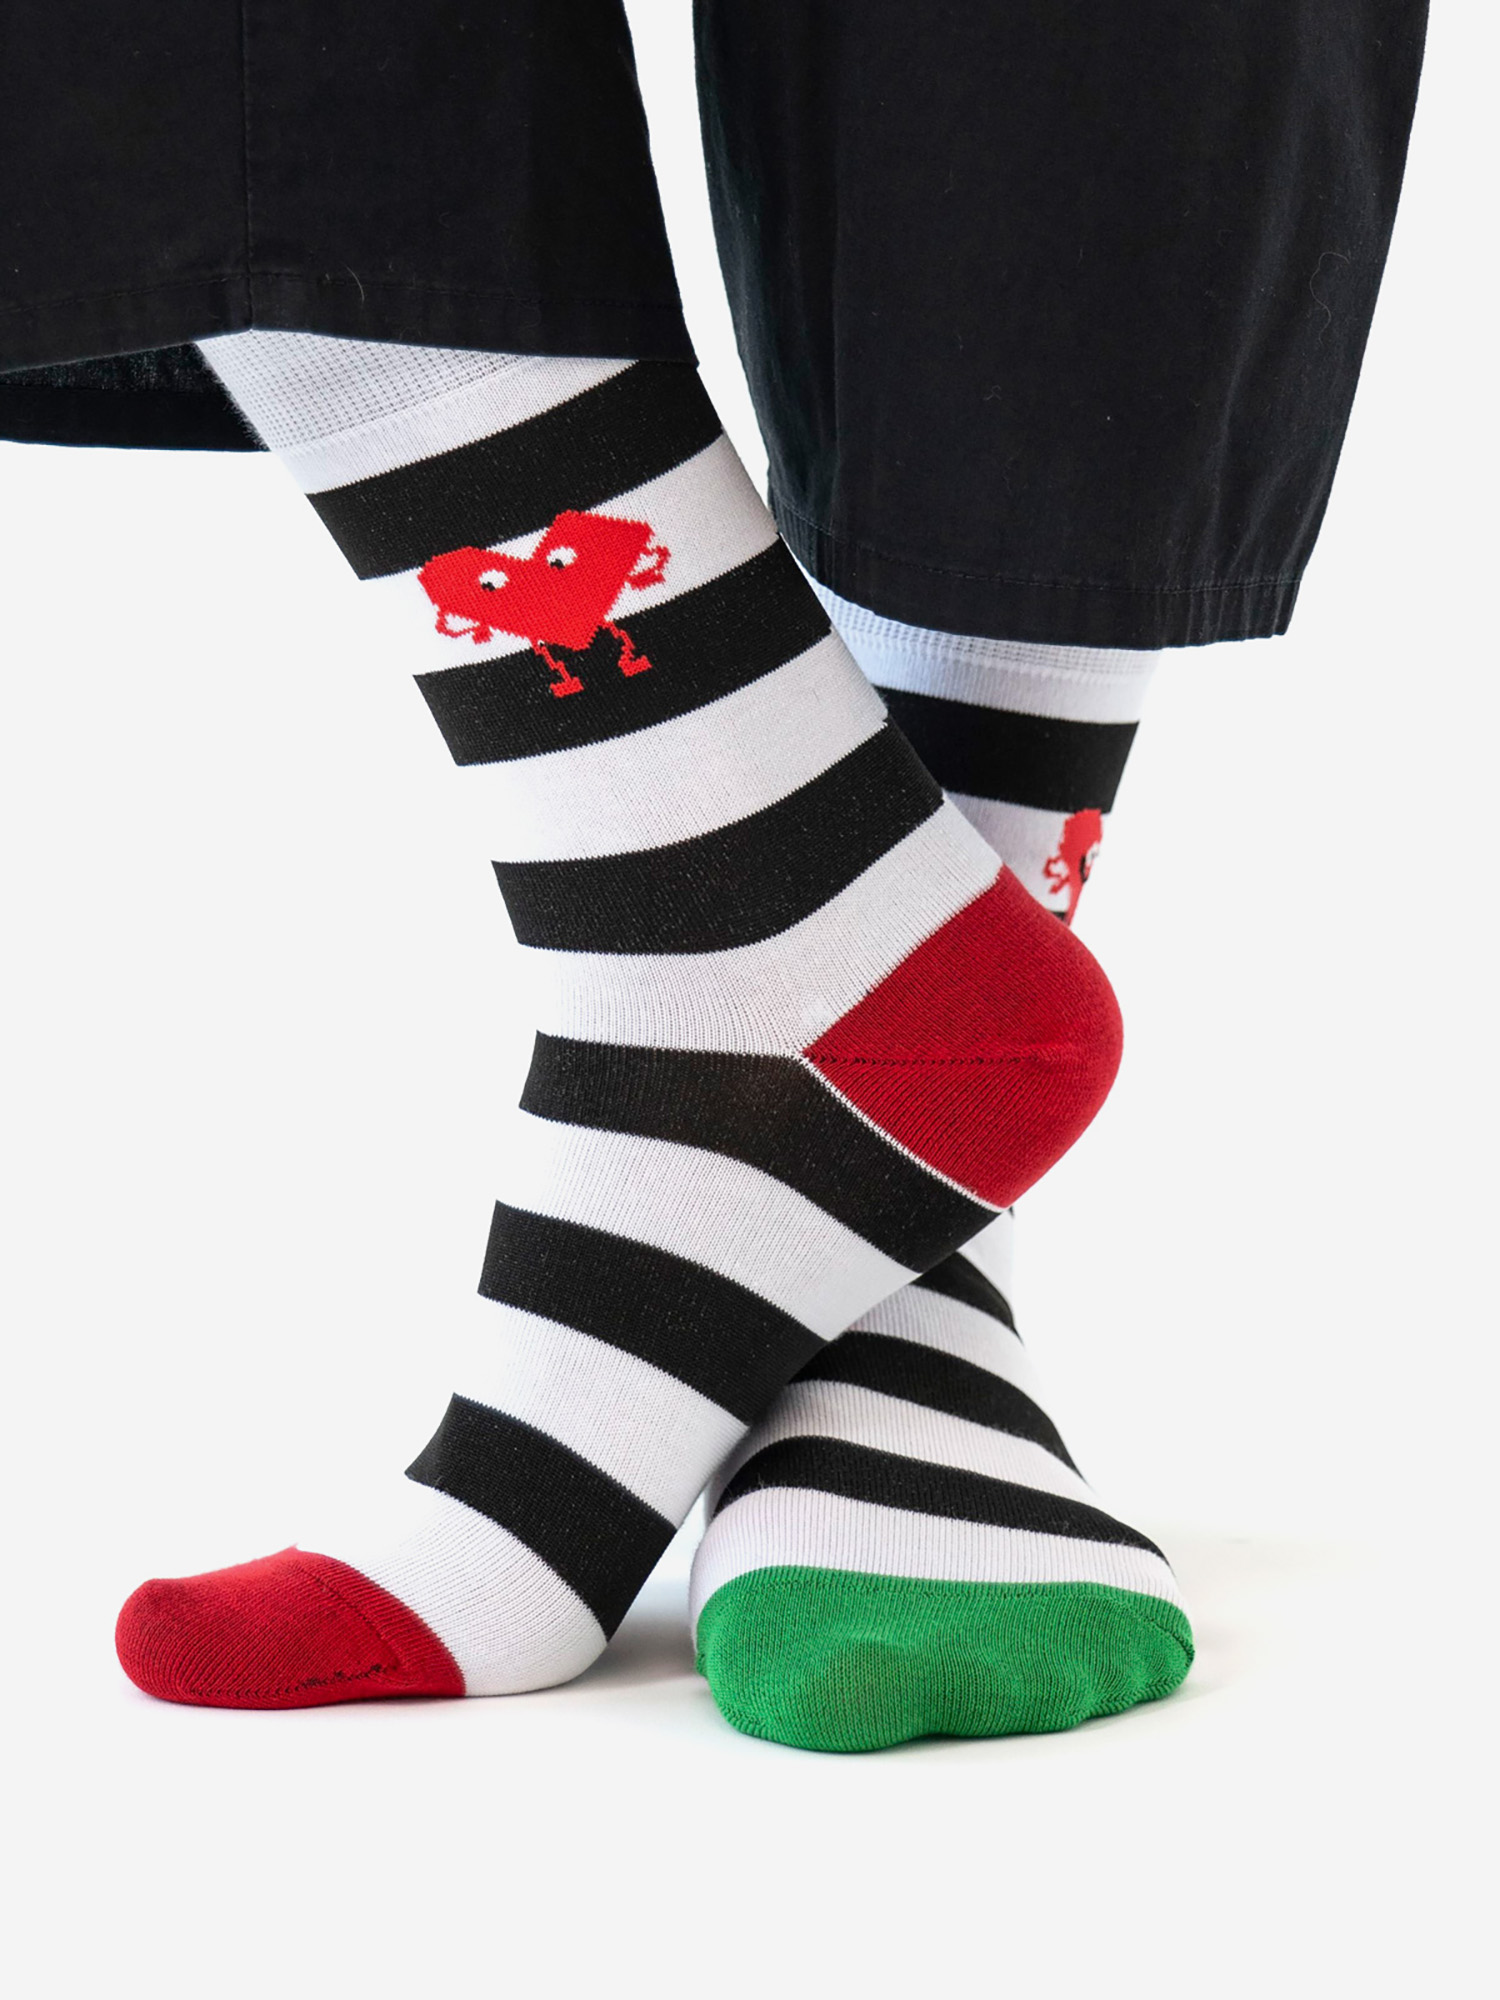 Носки St. Friday Socks - Полоски с сердечком, Черный салфетка этель полоски цв красный 33 48 см 500 гр м2 100% хлопок